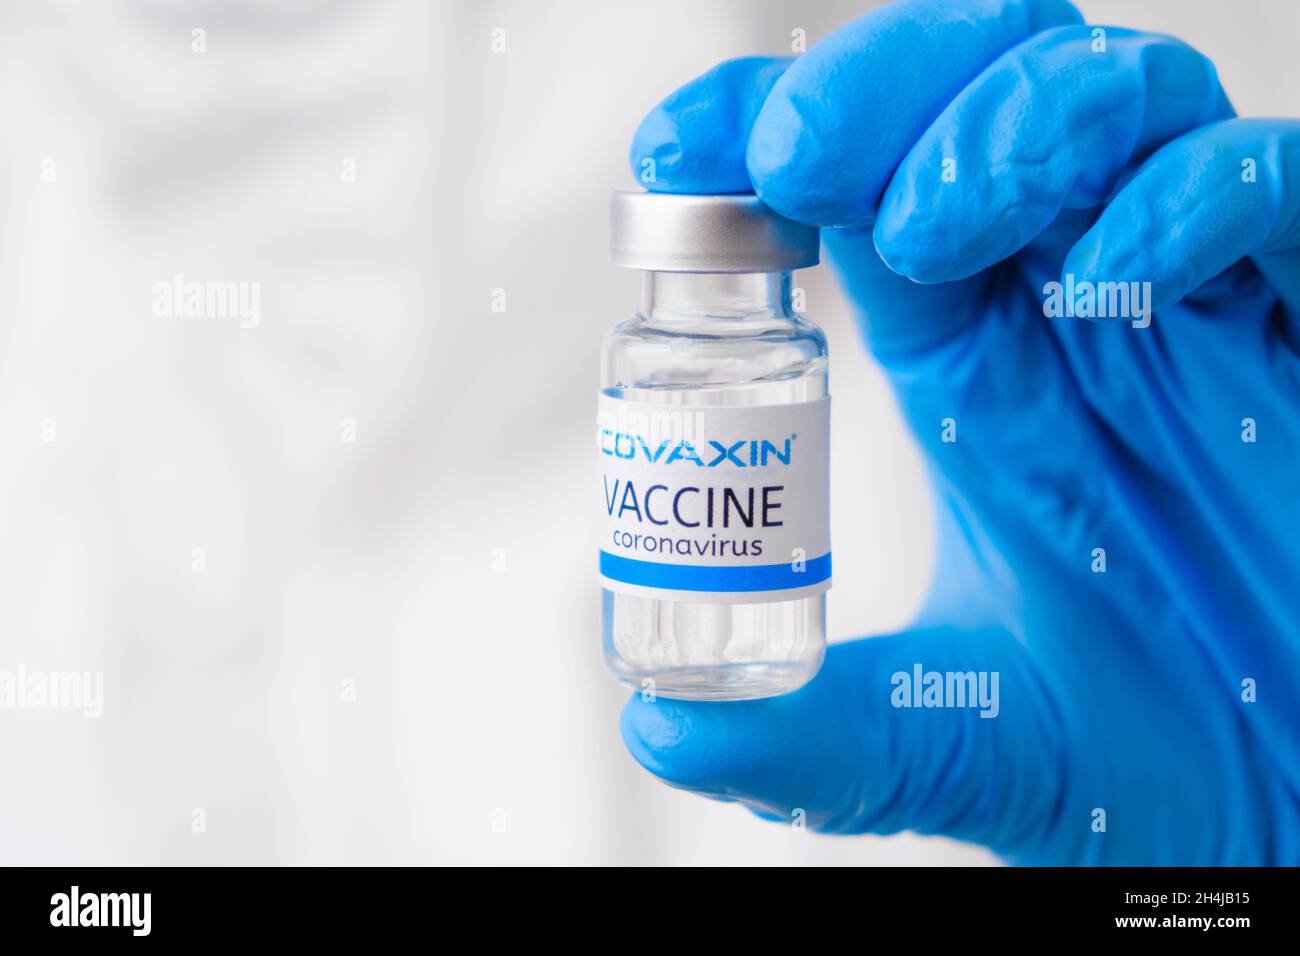 Vaccino Covaxin contro SARS-Cov-2, coronavirus o Covid-19 messo sul tavolo da un operatore medico nei guanti di gomma, marzo 2021, San Francisco, USA Foto Stock